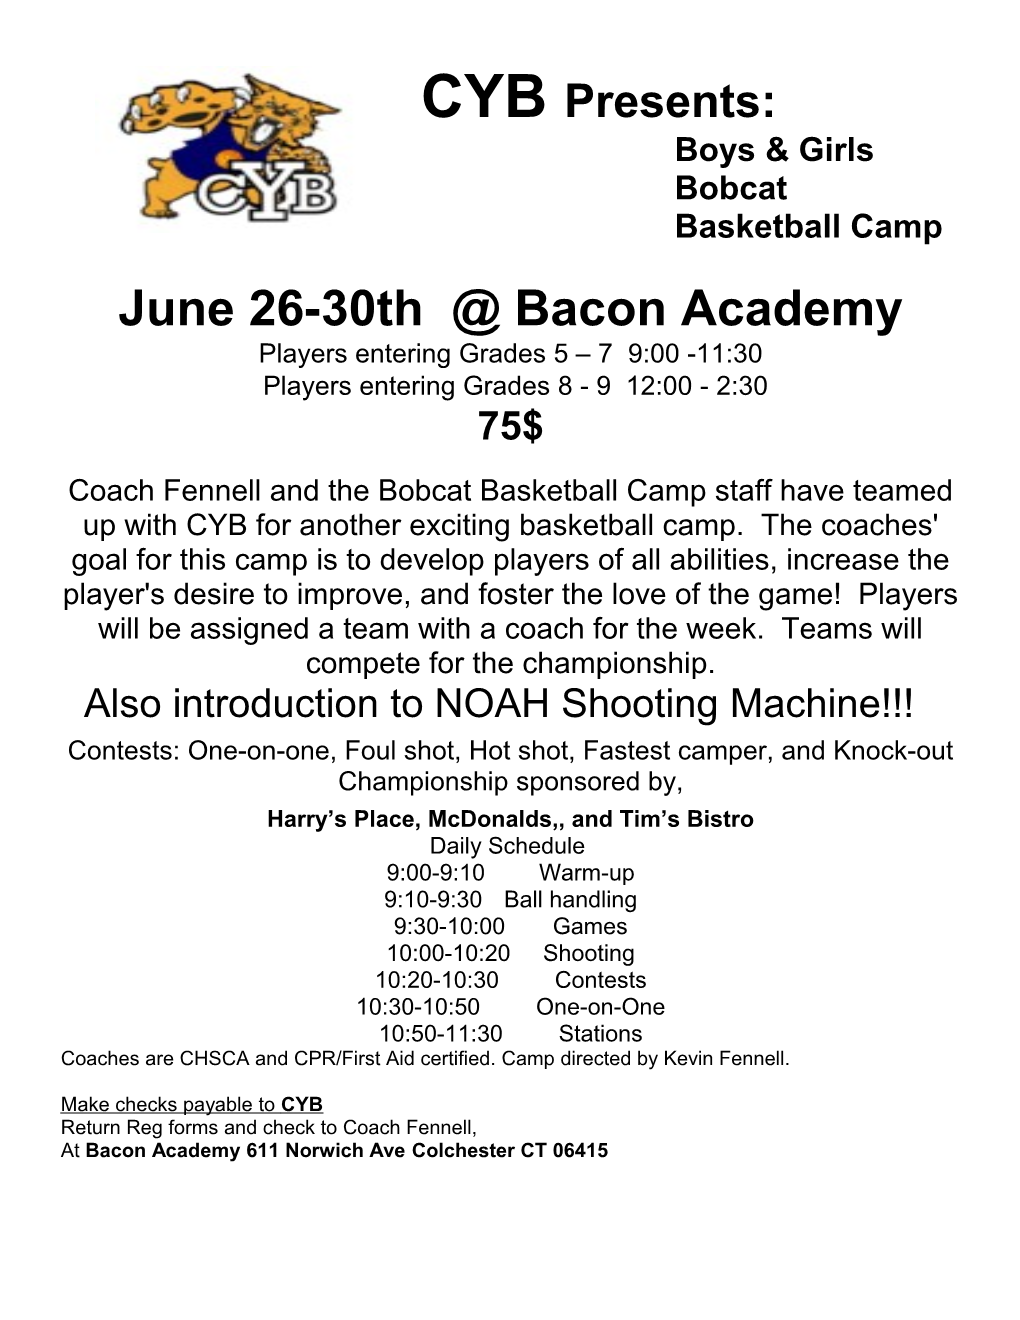 Bobcat Basketball Camp